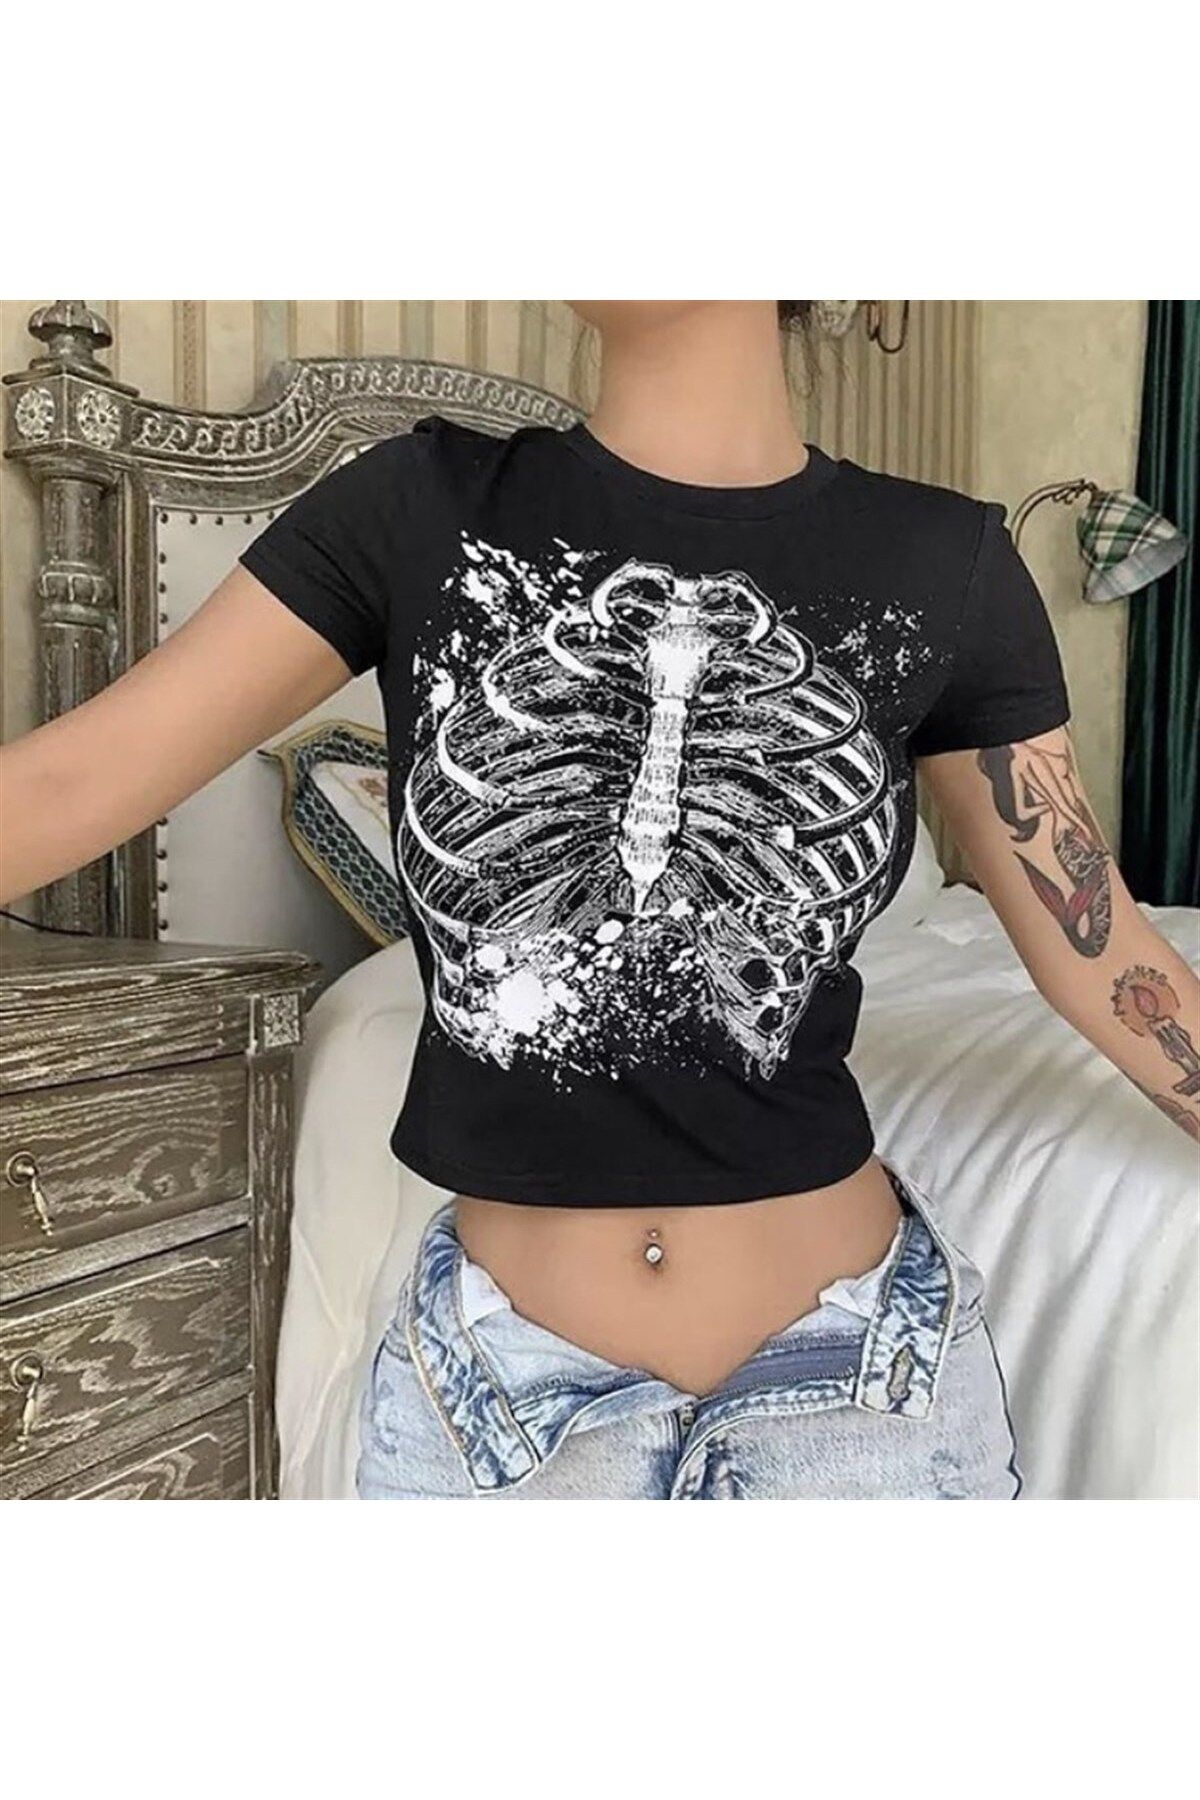 Köstebek Gothic Skeleton Cage Yarım Kadın T-shirt